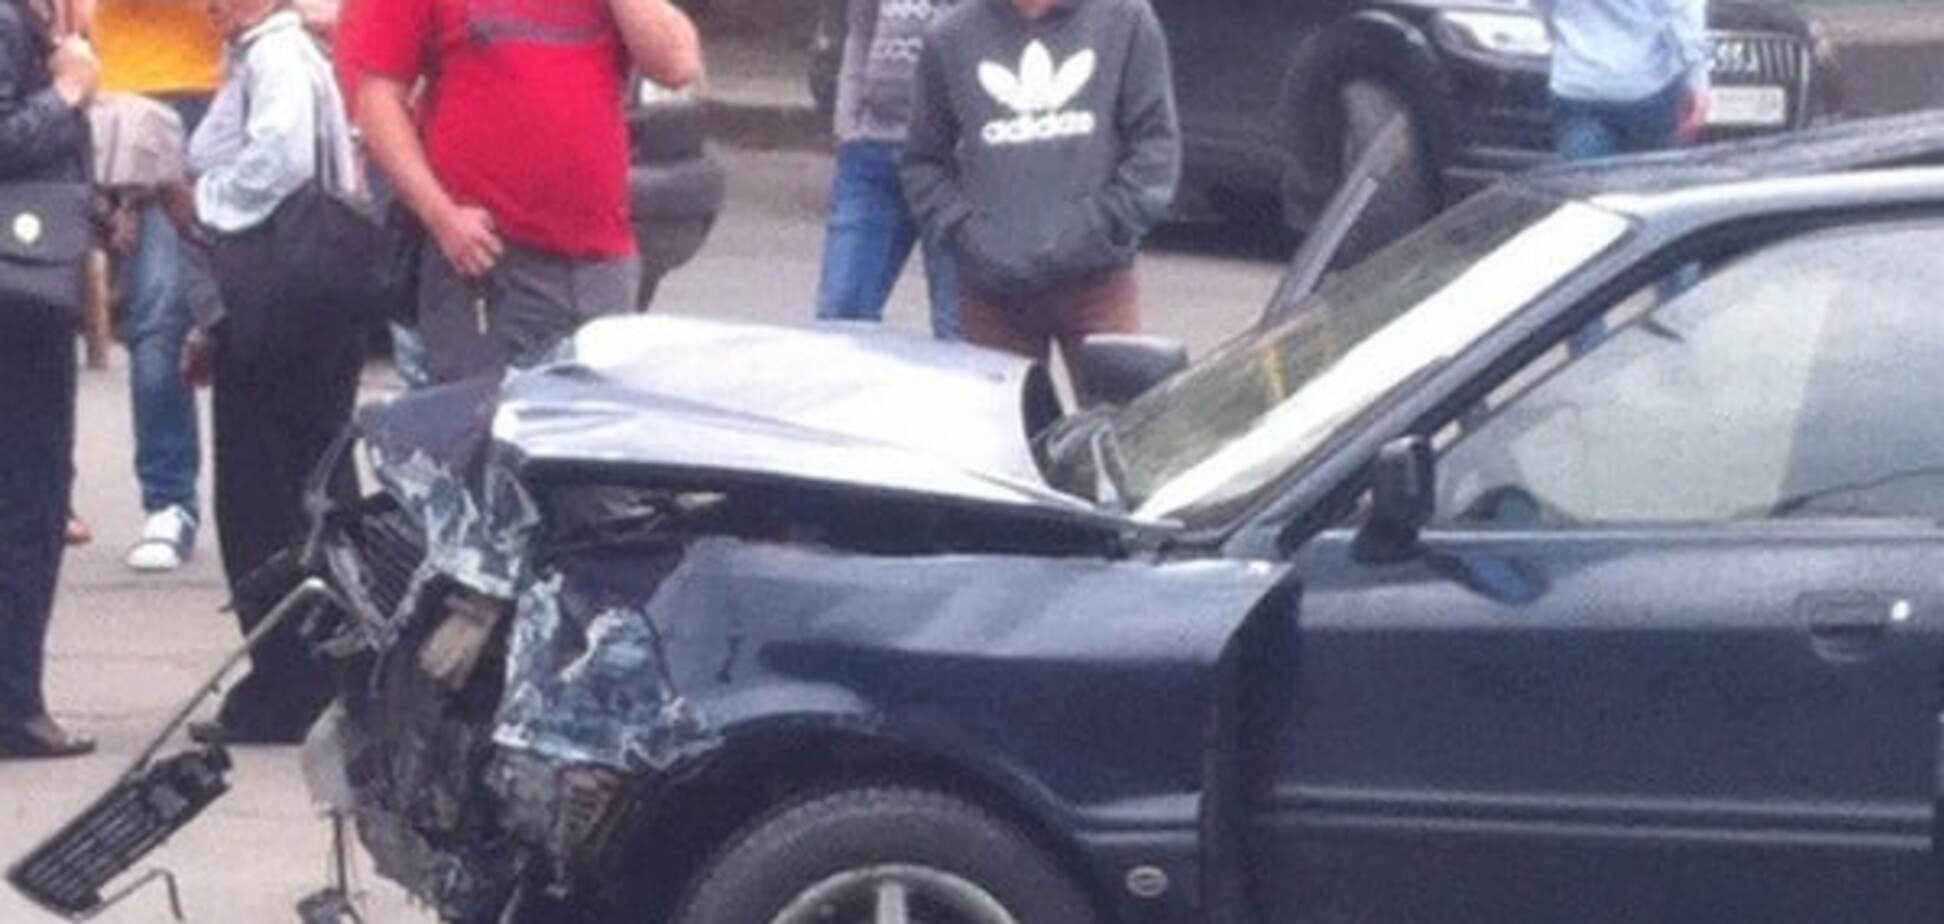 Плювати на правила: у Тернополі зіткнулися два автомобілі. Фото